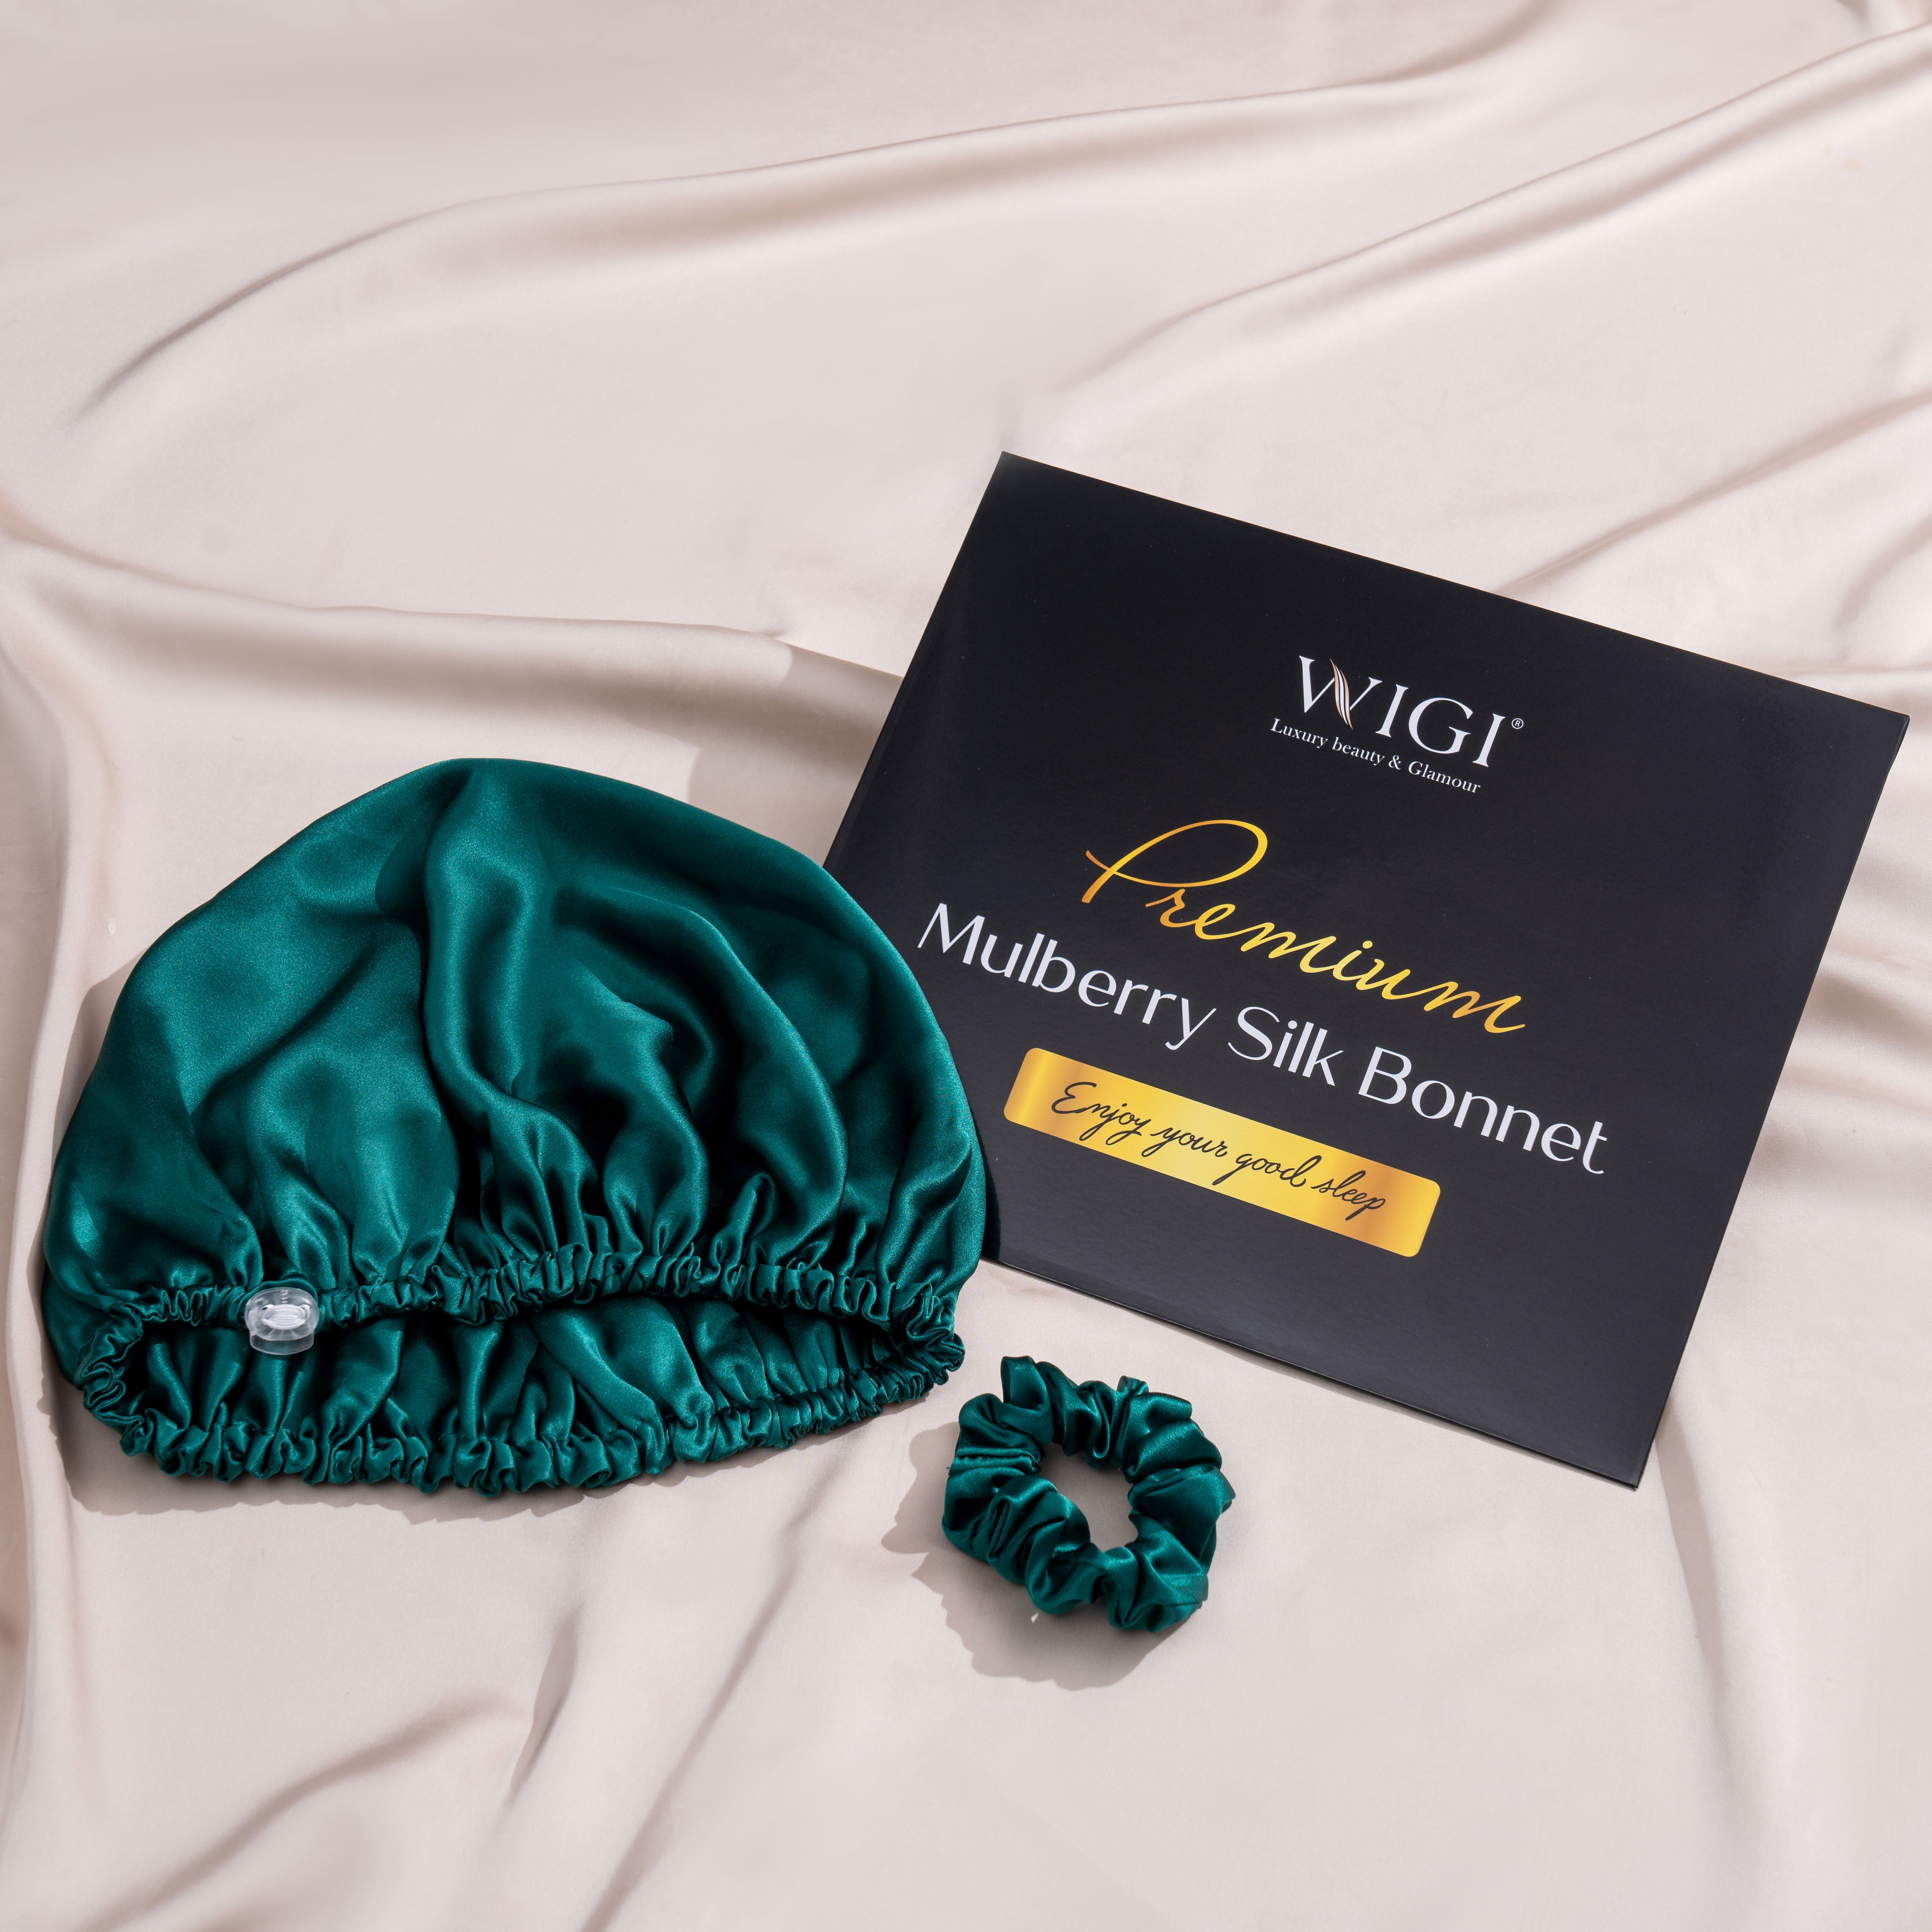 WIGI Premium Mulberry Silk Sleeping Bonnet - Round Style & Dark Green